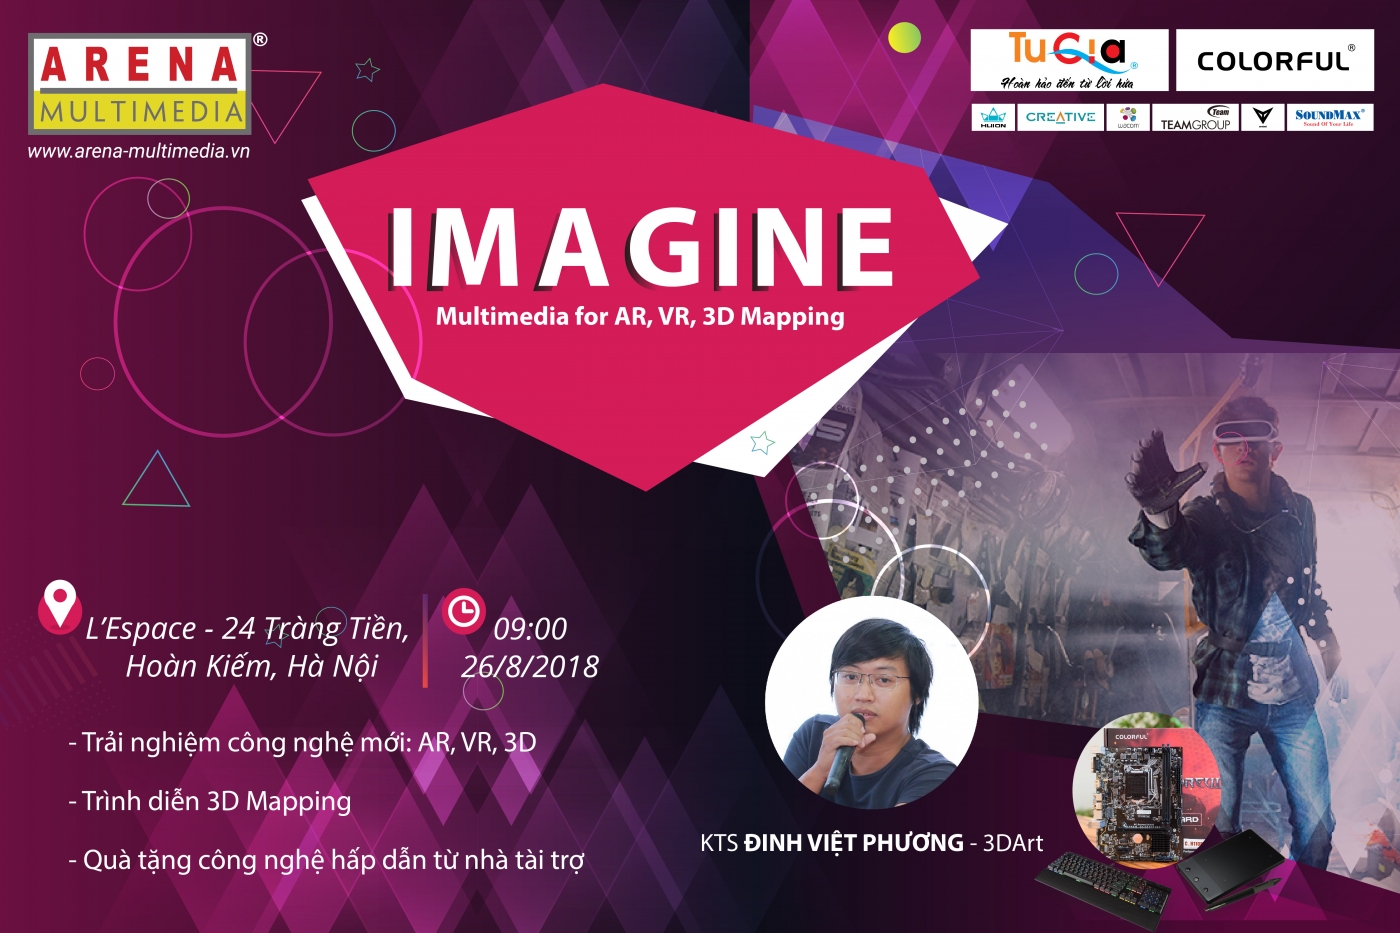 Sự kiện: IMAGINE - Multimedia for AR, VR, 3D Mapping (26/8 tại Hà Nội)